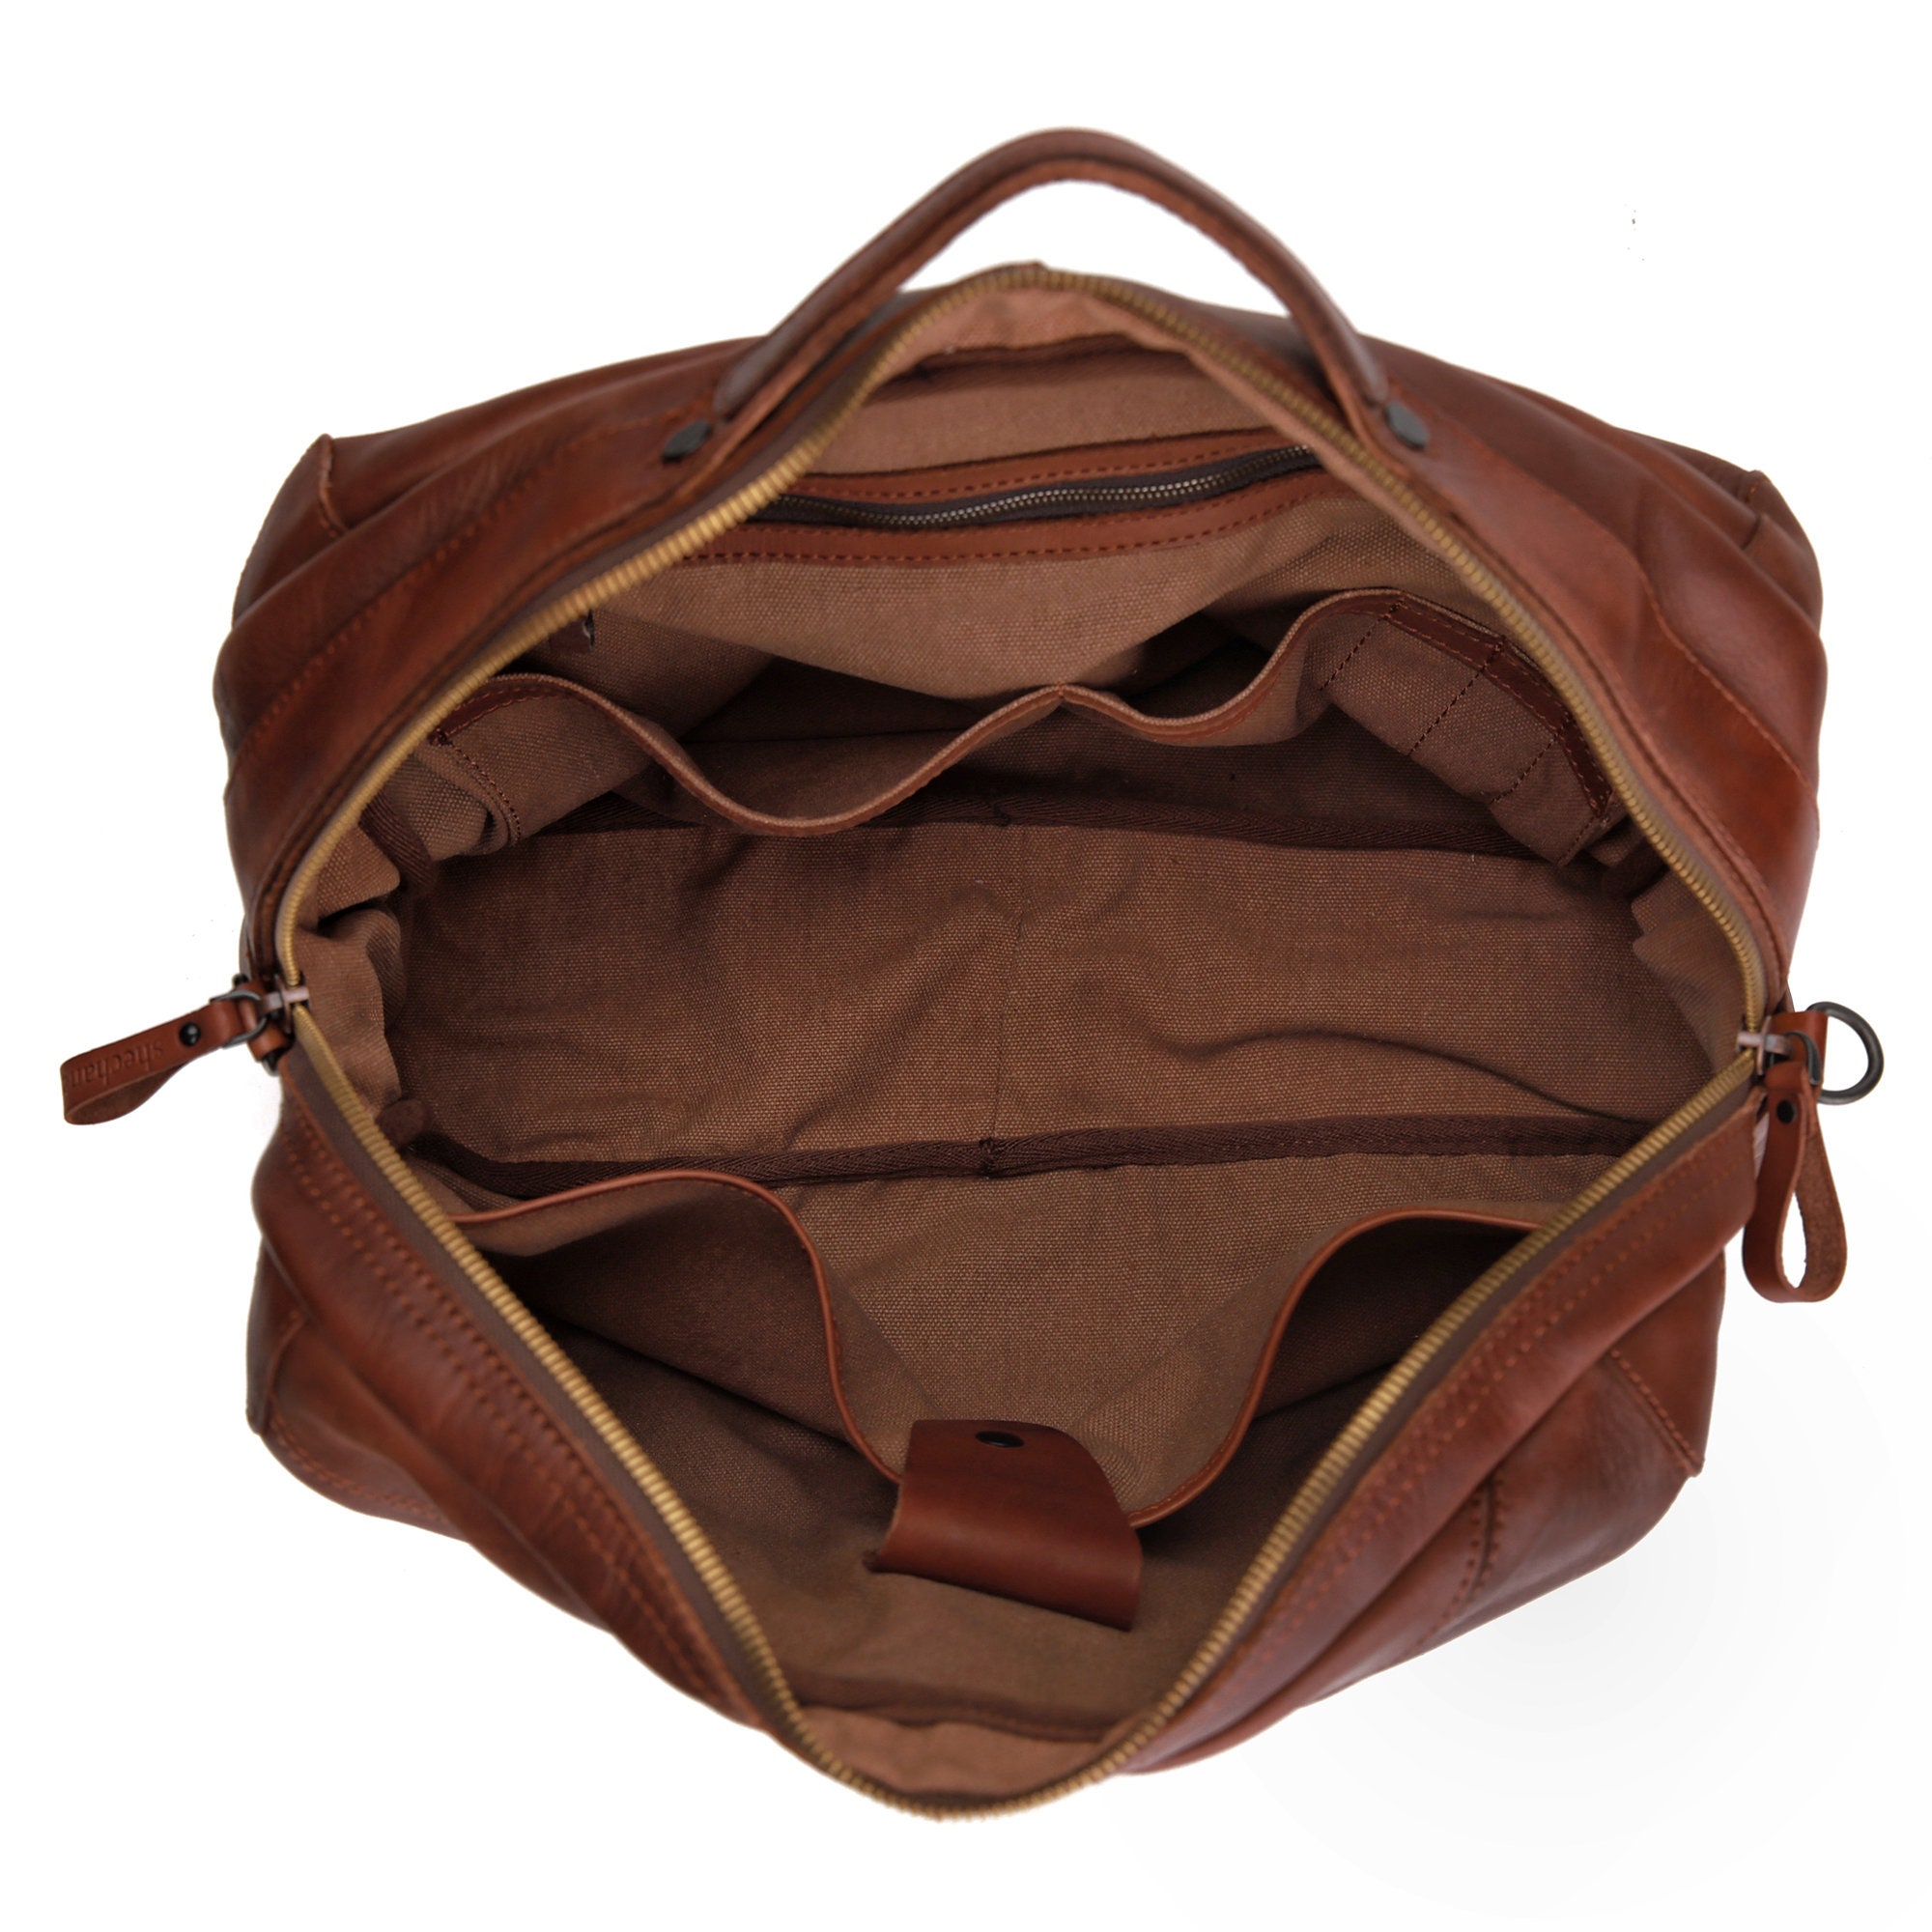 Weekender Bag Travel Duffel Bag Genuine Leather Travel Luggage | Etsy